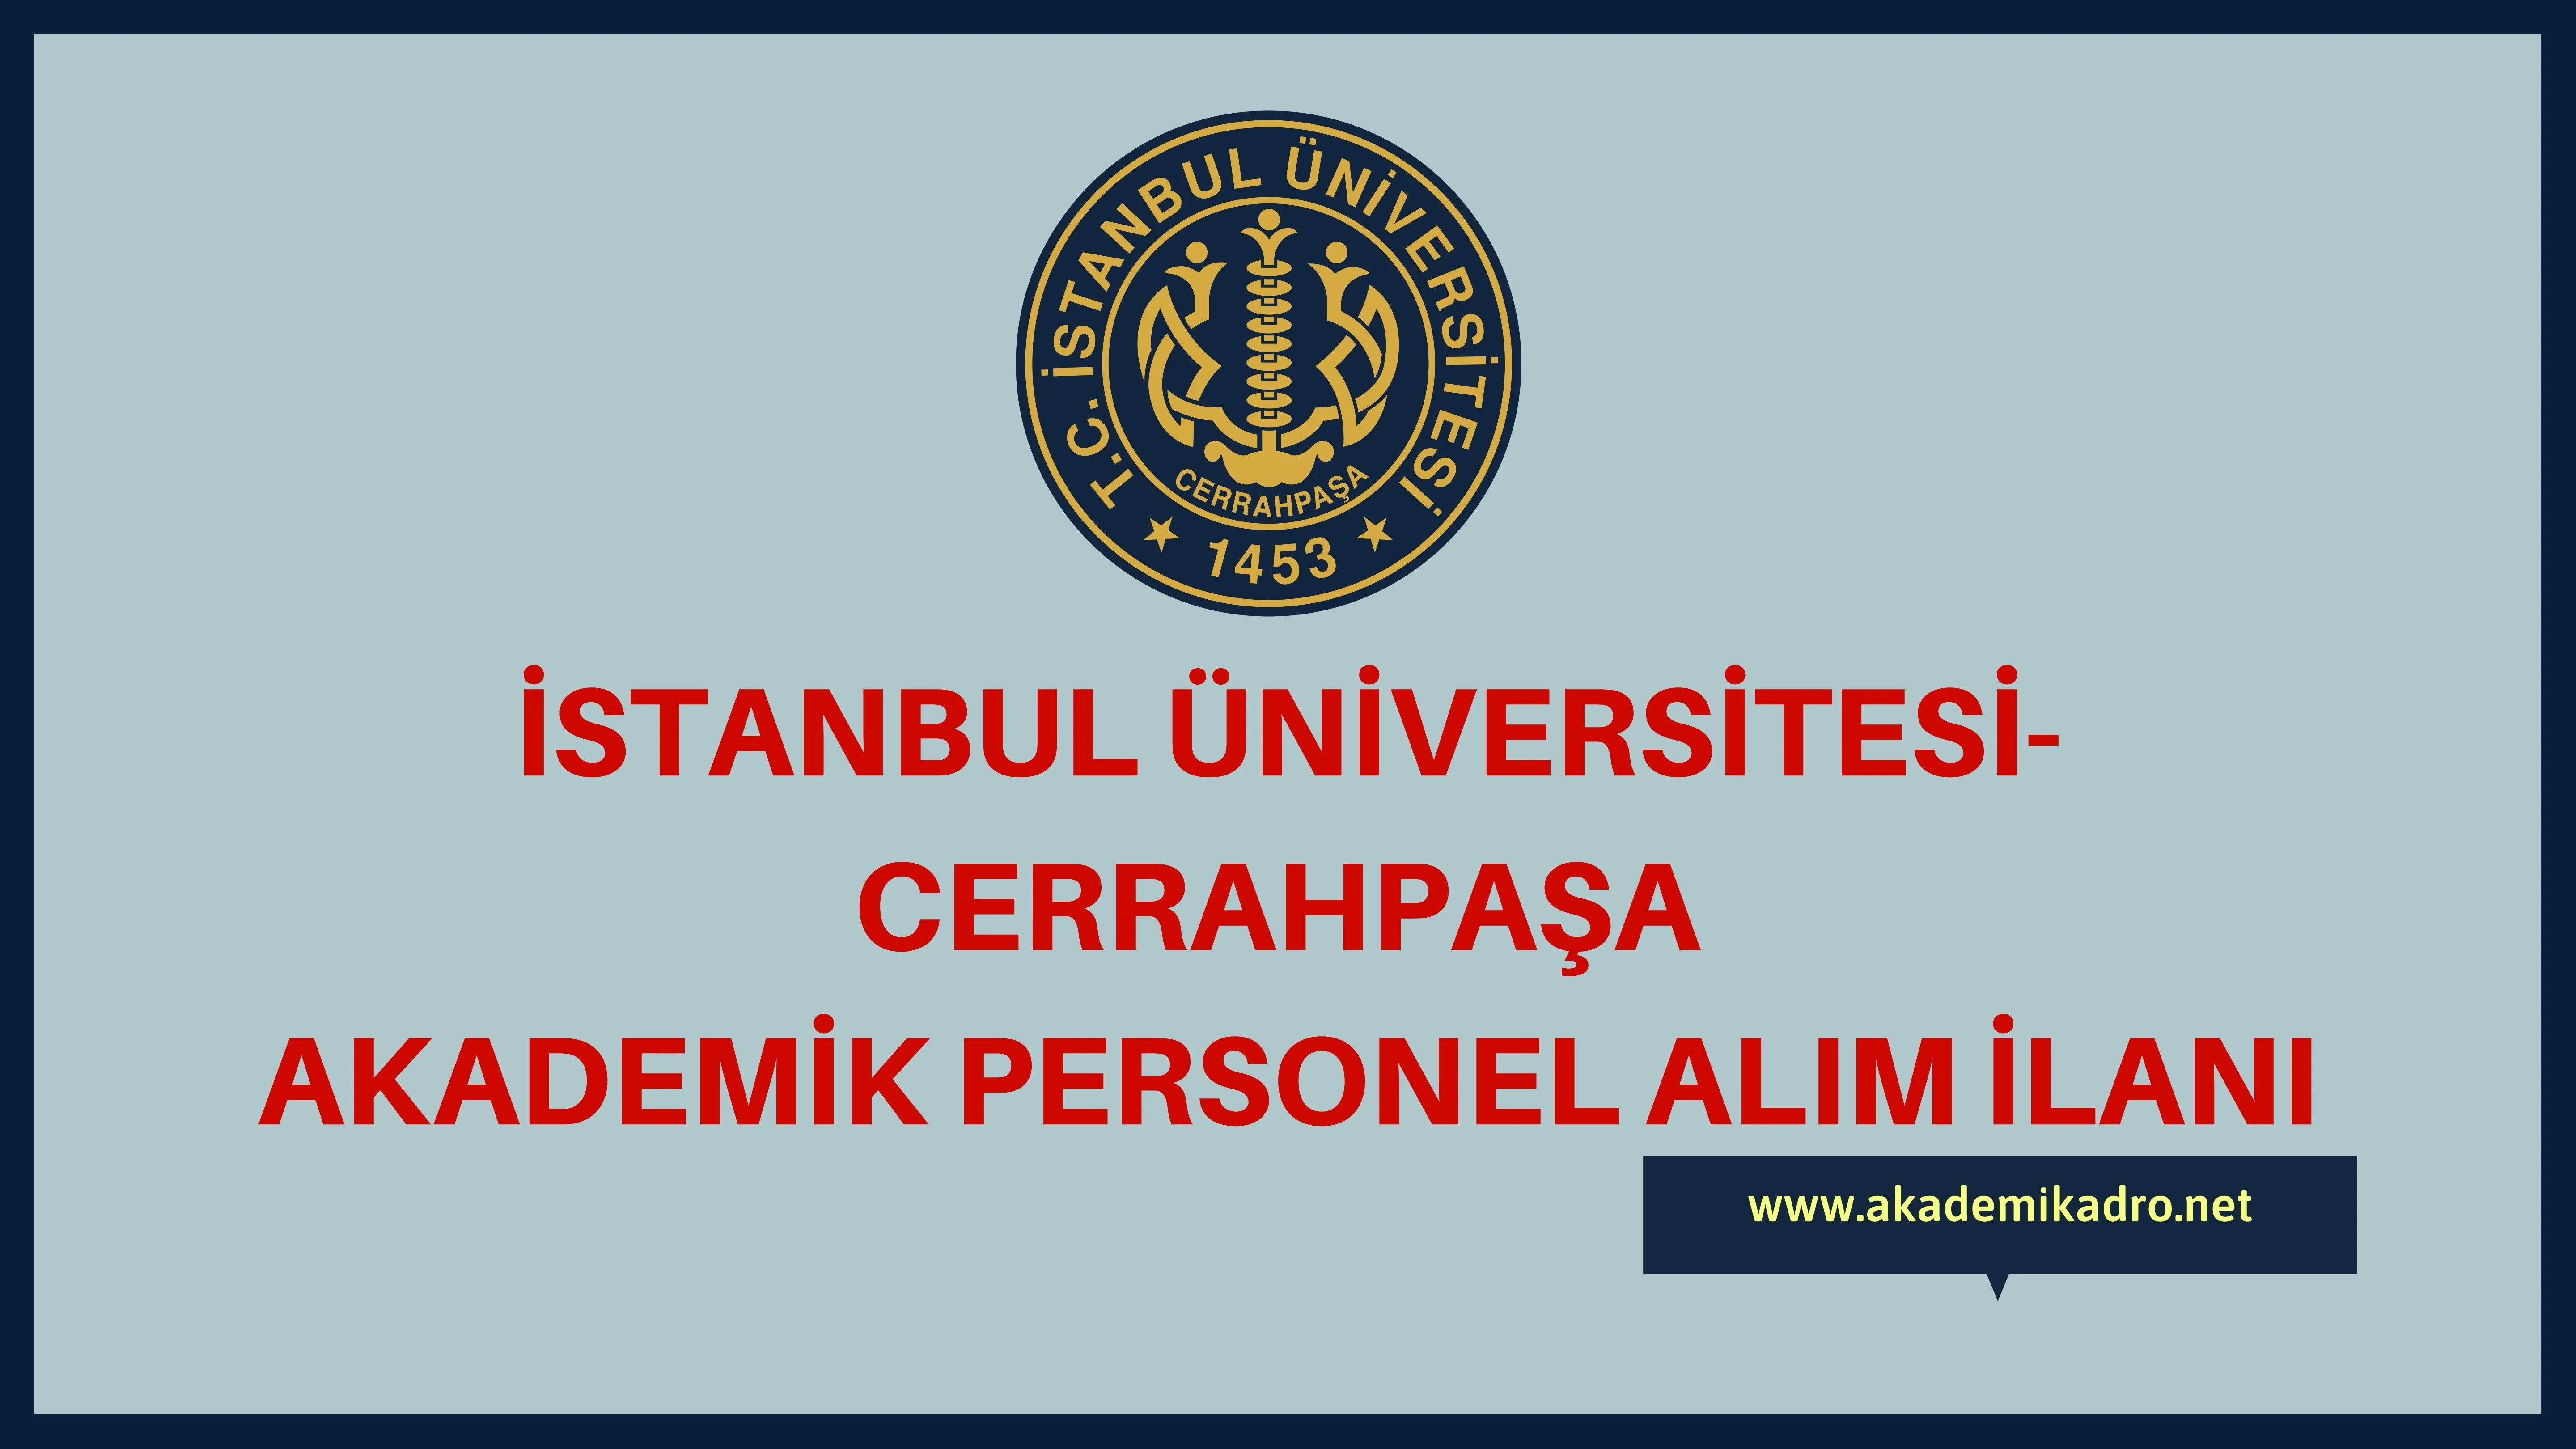 İstanbul Üniversitesi-Cerrahpaşa birçok alandan 37 akademik personel alacak.